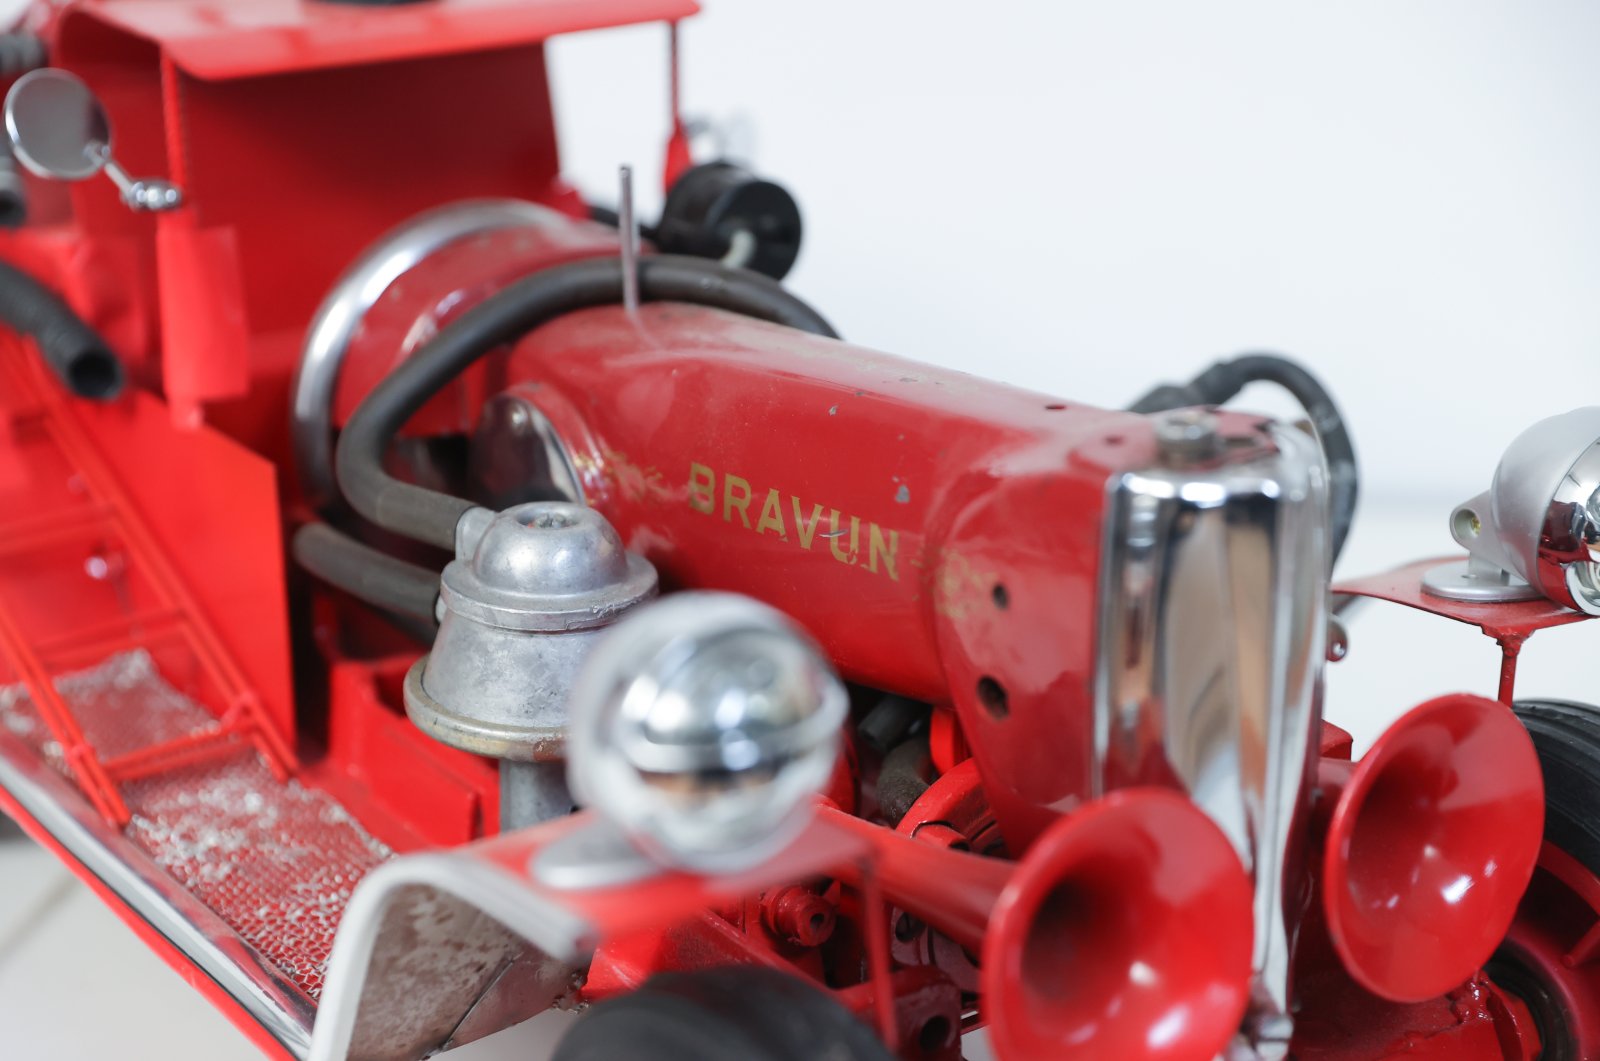 Pria Turki membuat mobil model ikonik dari suku cadang mesin jahit tua